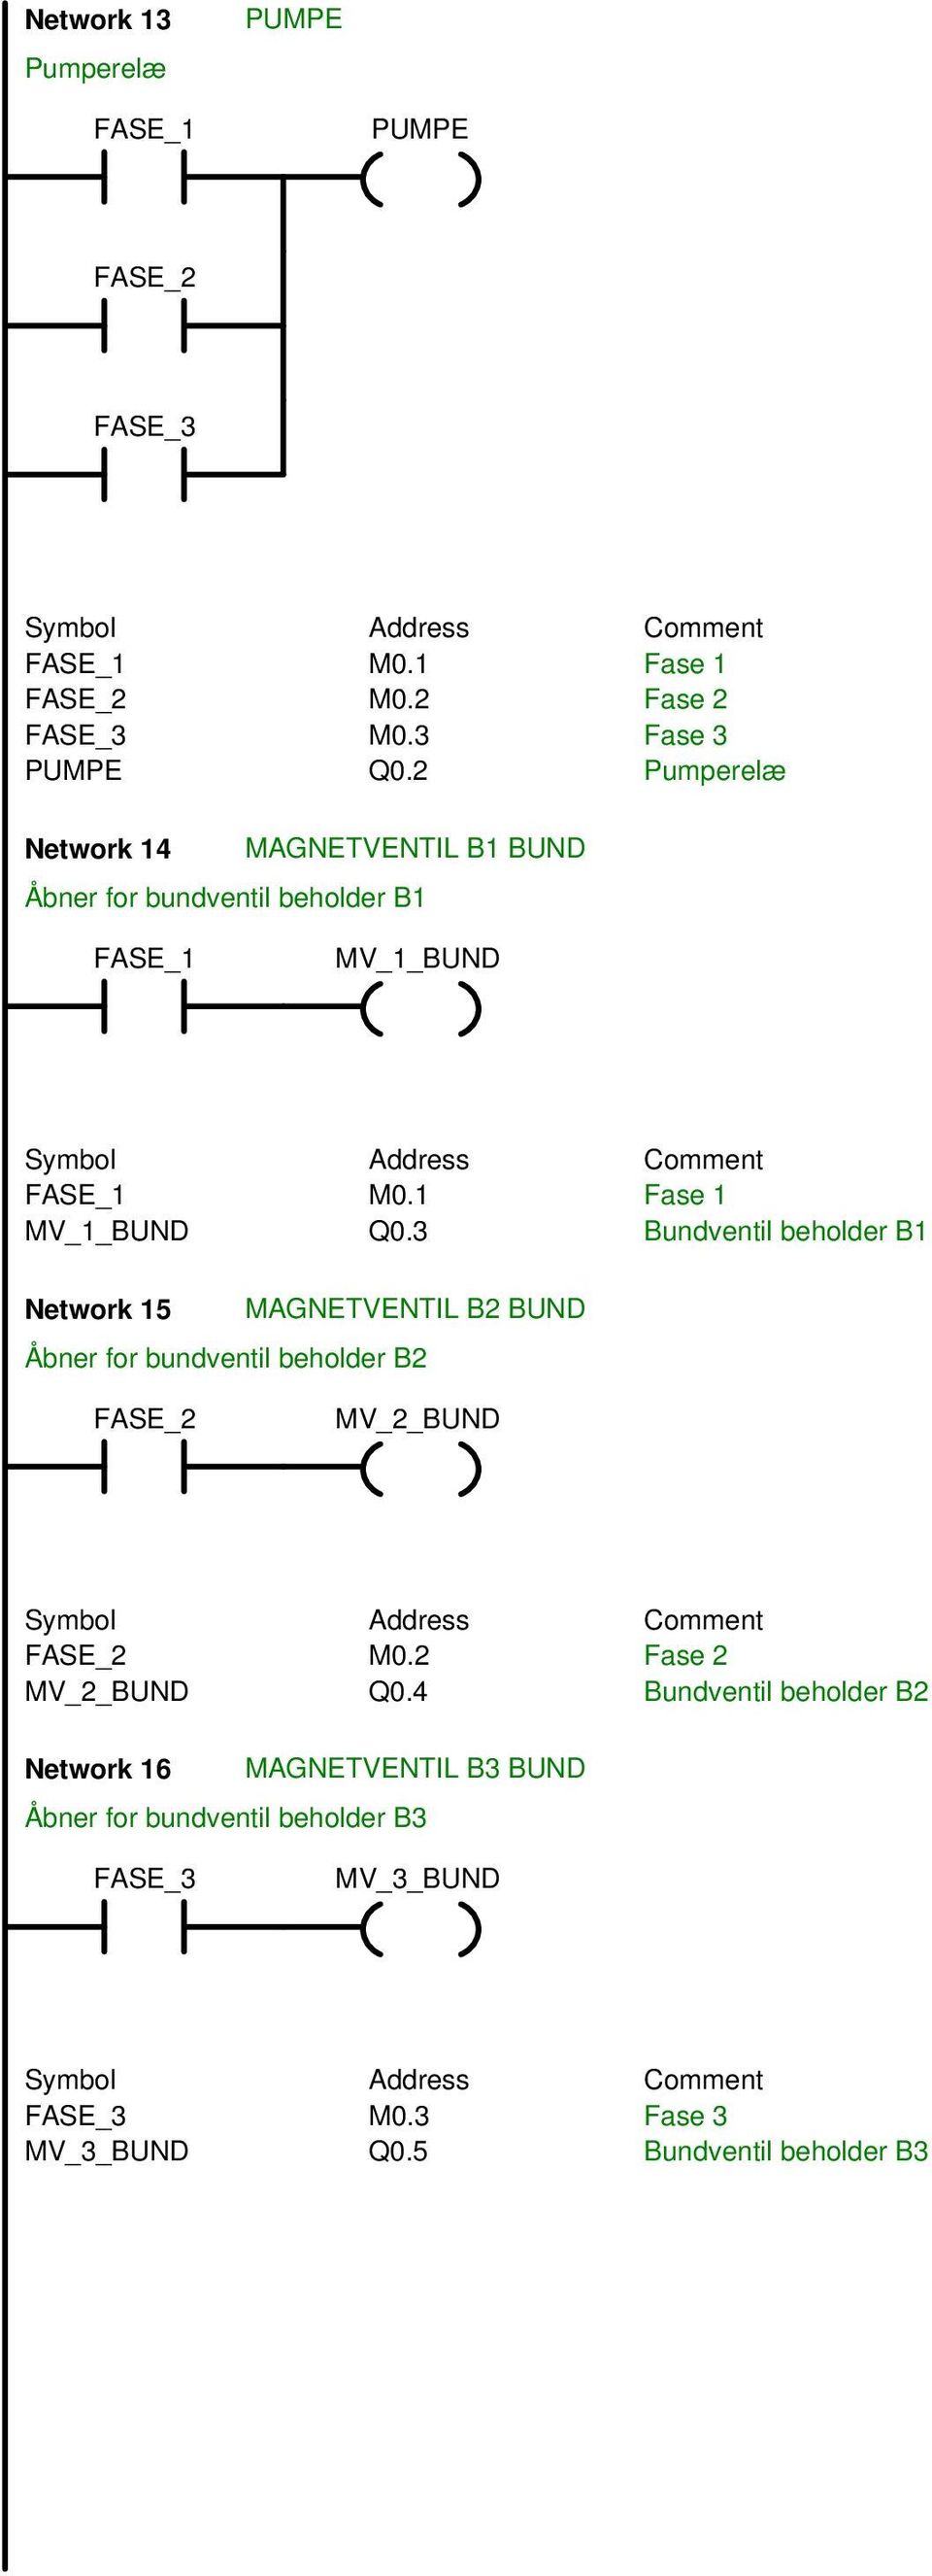 3 Bundventil beholder B1 Network 15 MAGNETVENTIL B2 BUND Åbner for bundventil beholder B2 FASE_2 MV_2_BUND FASE_2 M0.